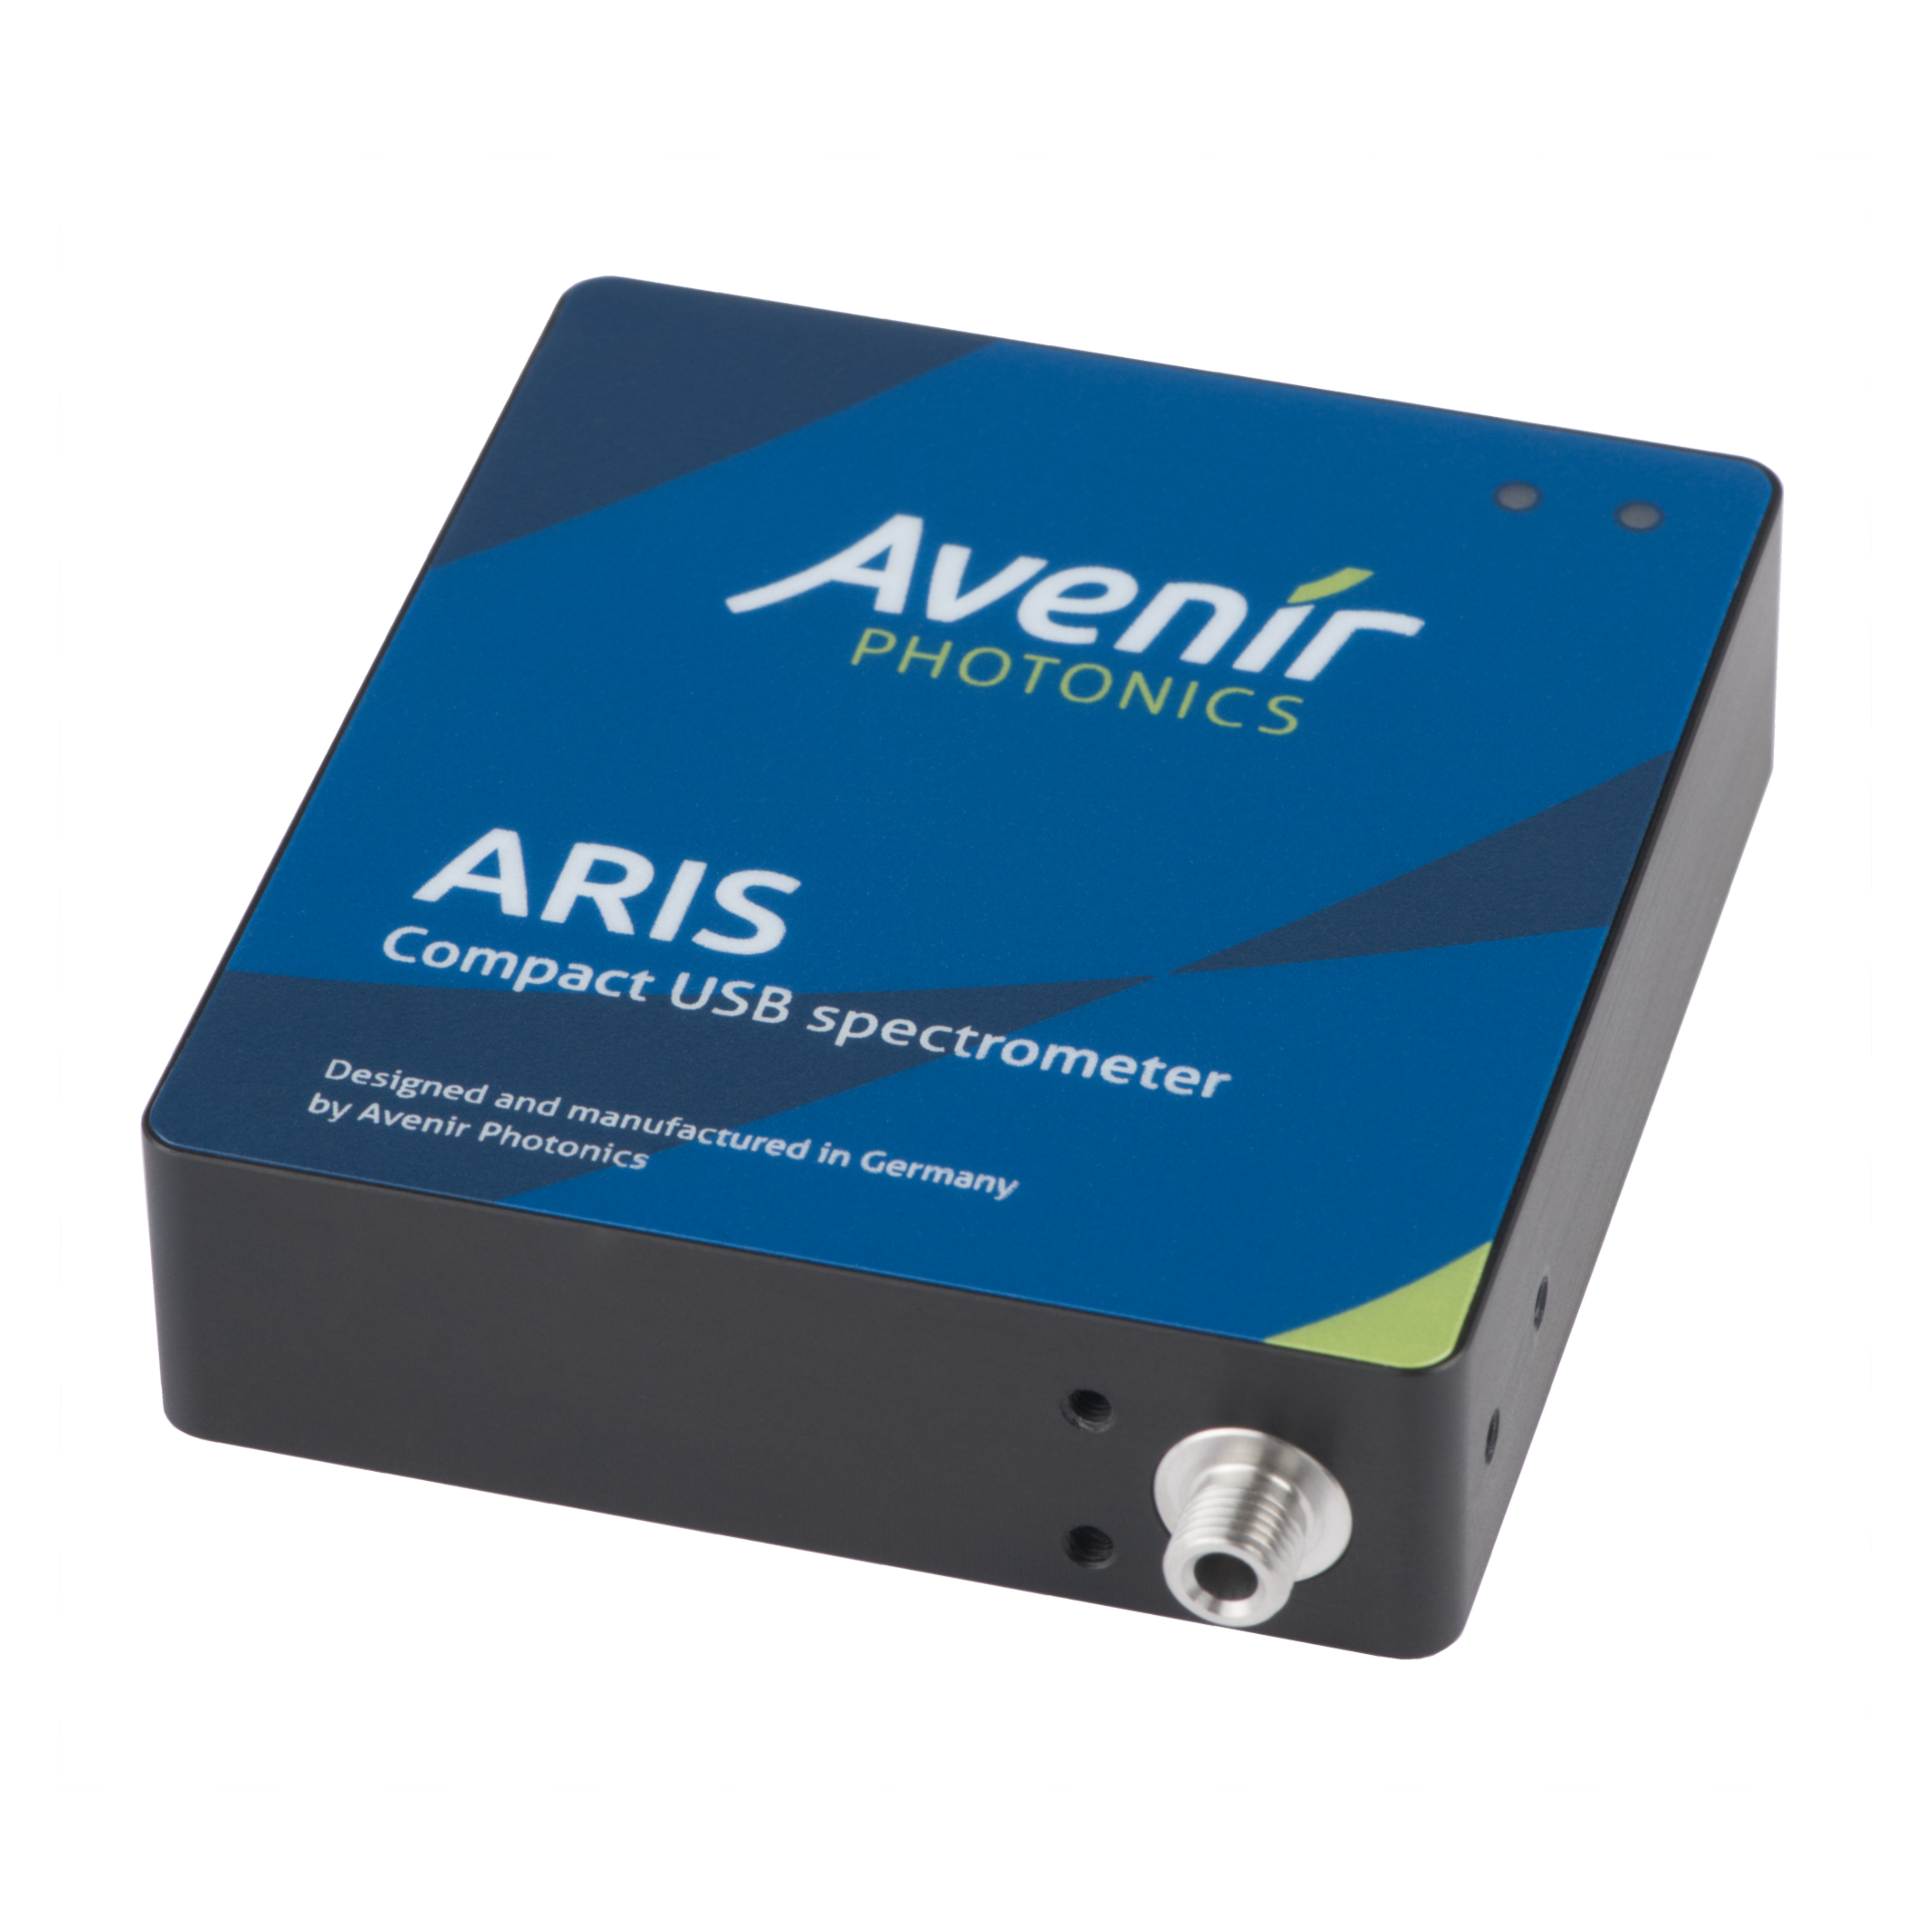 德国Avenir Photonics公司Aris便携式光纤光谱仪